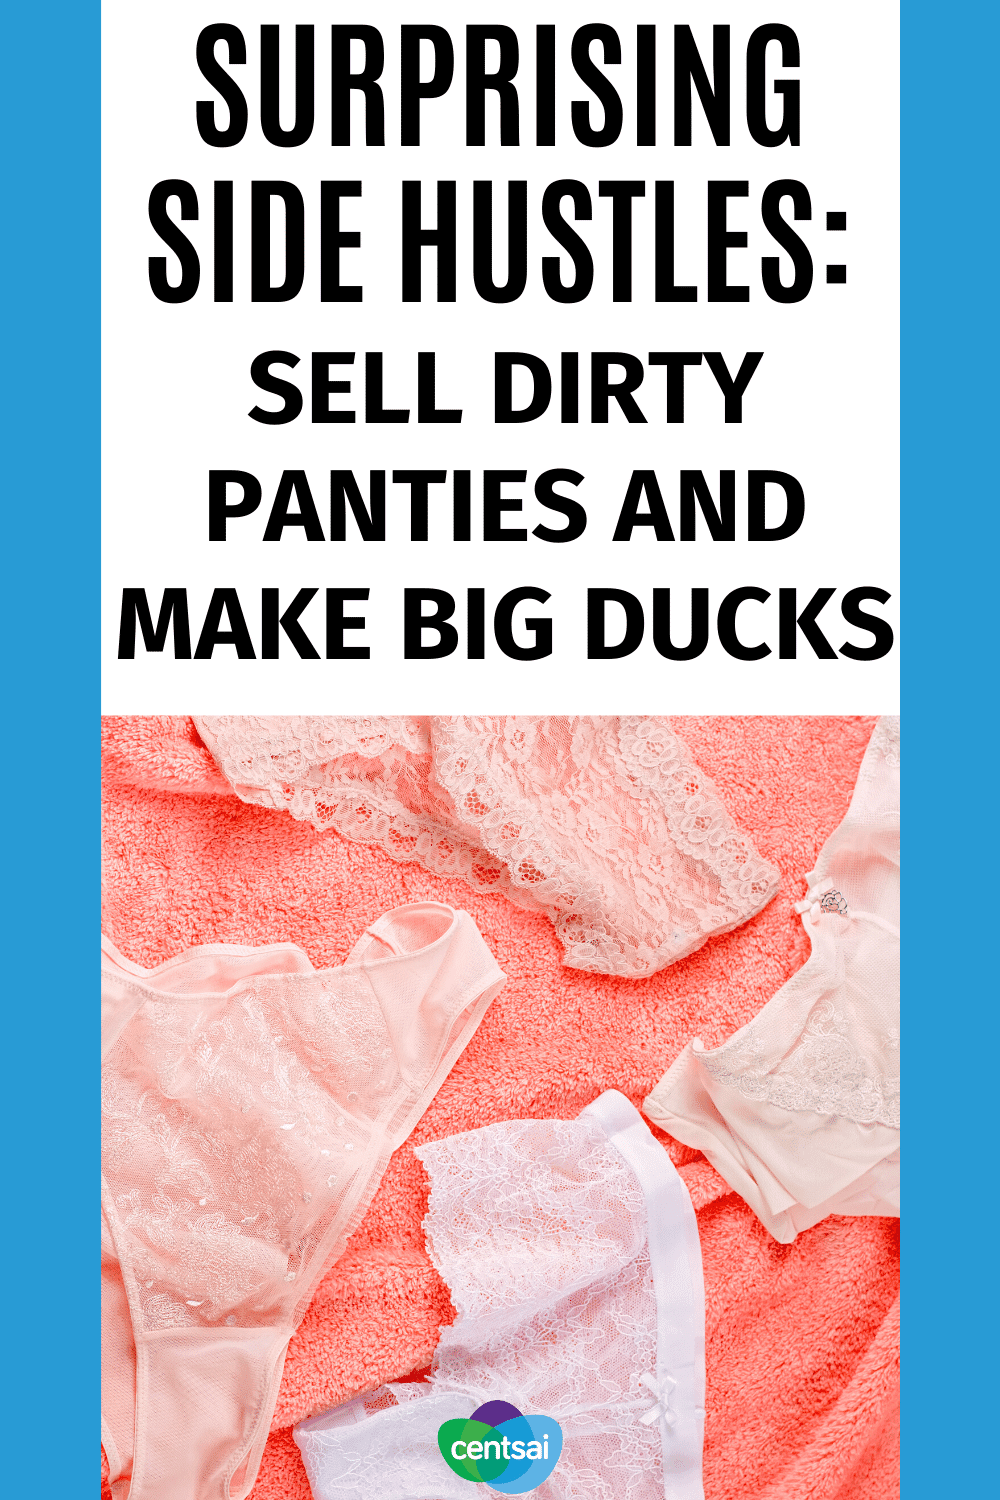 Selling Panties Online